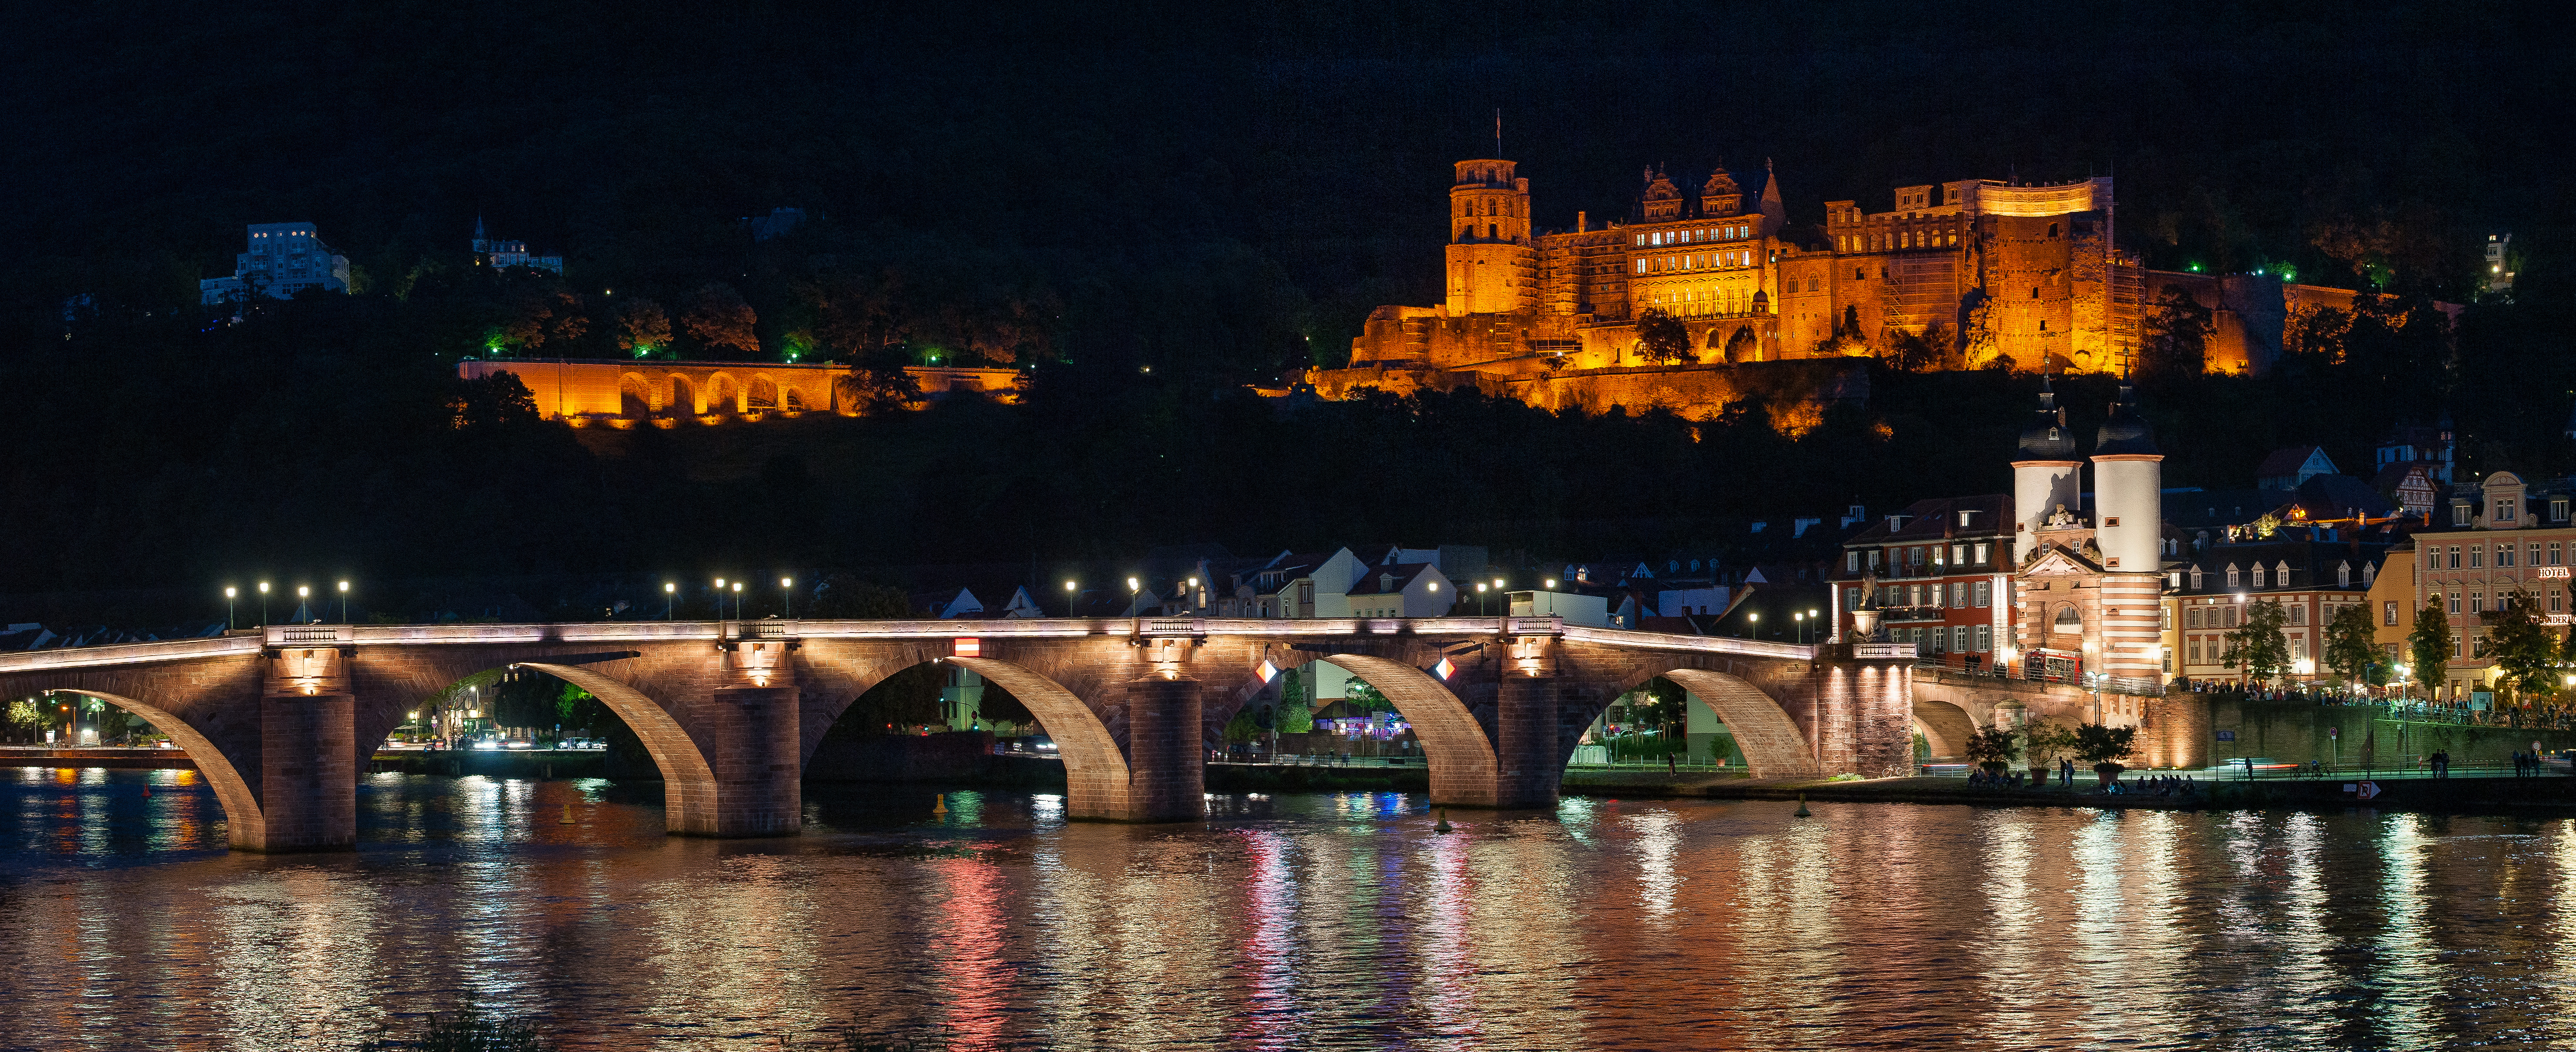 Фото бесплатно Heidelberg at night, мостовые арки, подсветка